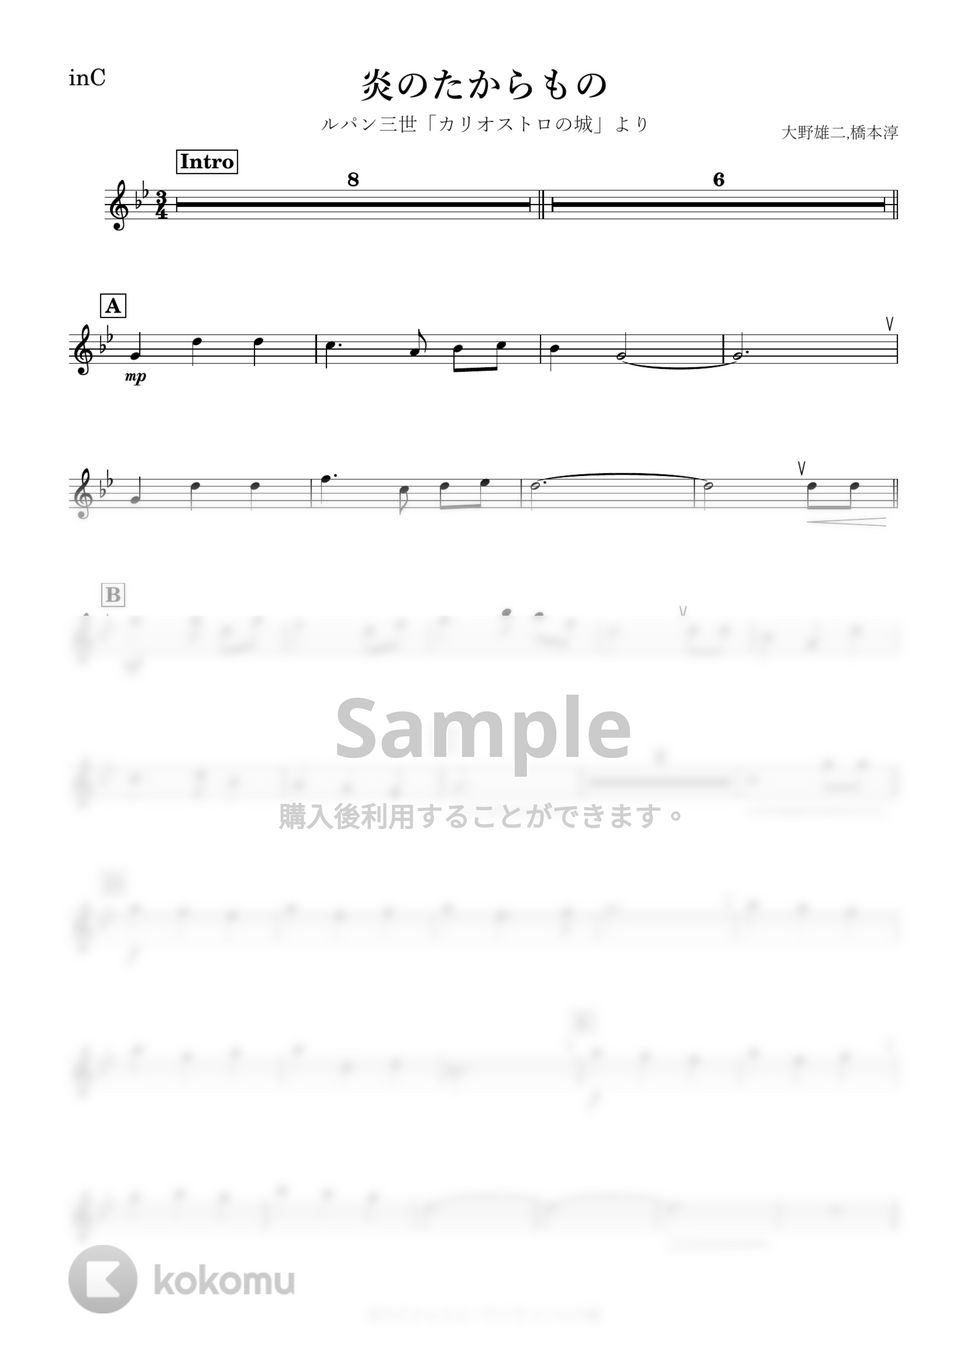 ルパン三世 - 炎のたからもの (C) by kanamusic